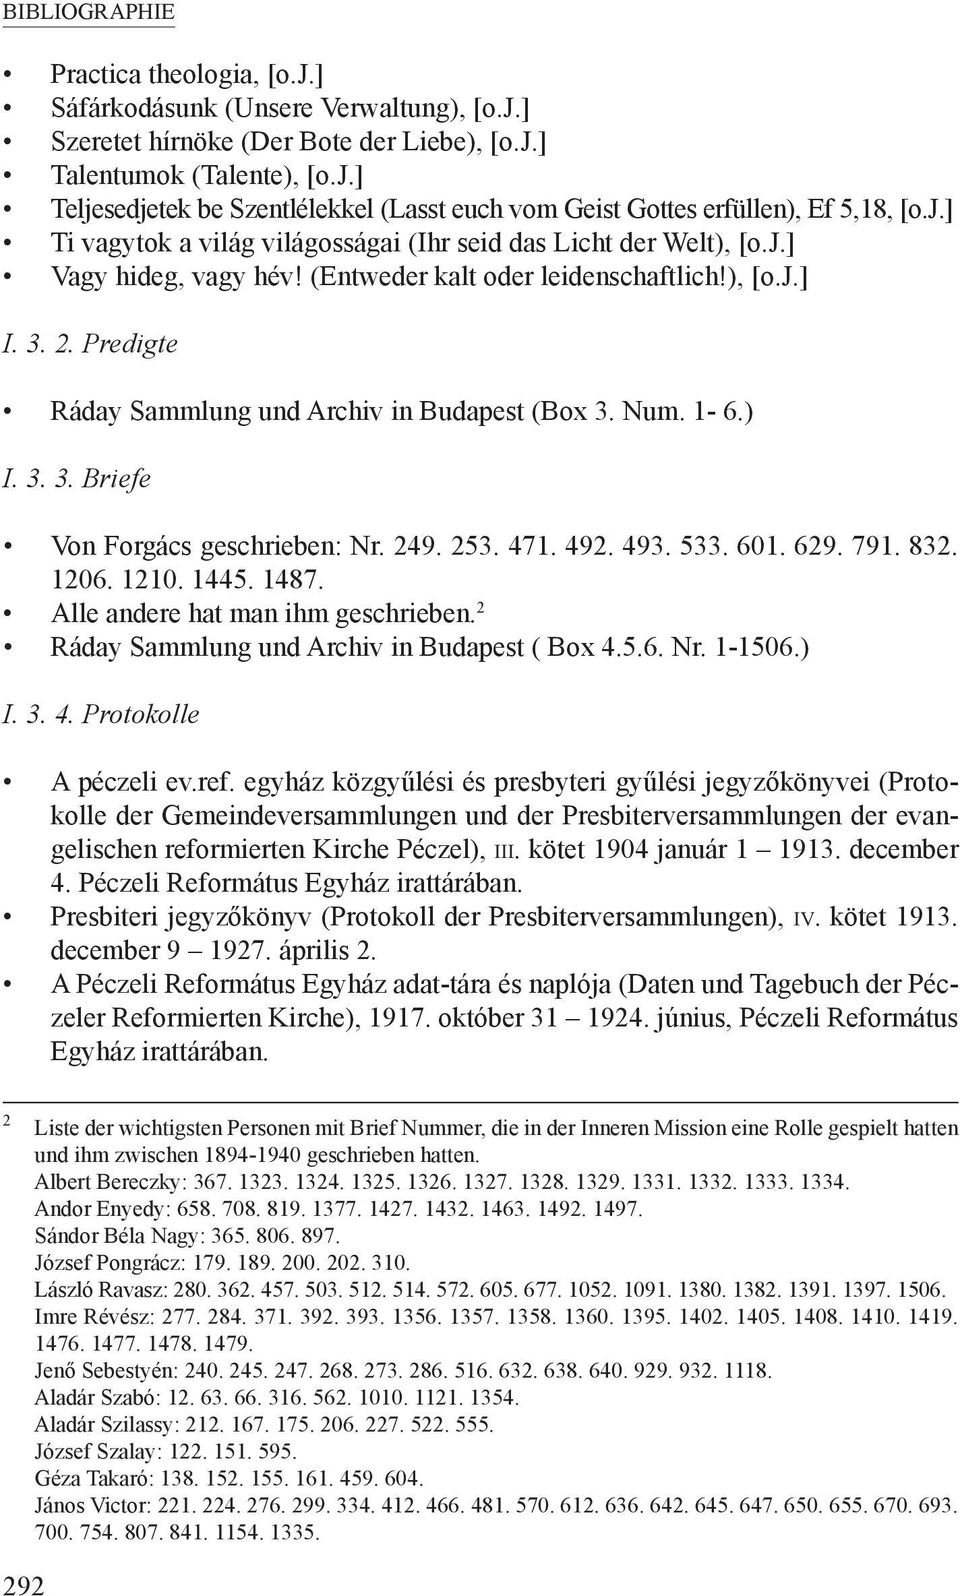 Predigte Ráday Sammlung und Archiv in Budapest (Box 3. Num. 1-6.) I. 3. 3. Briefe Von Forgács geschrieben: Nr. 249. 253. 471. 492. 493. 533. 601. 629. 791. 832. 1206. 1210. 1445. 1487.